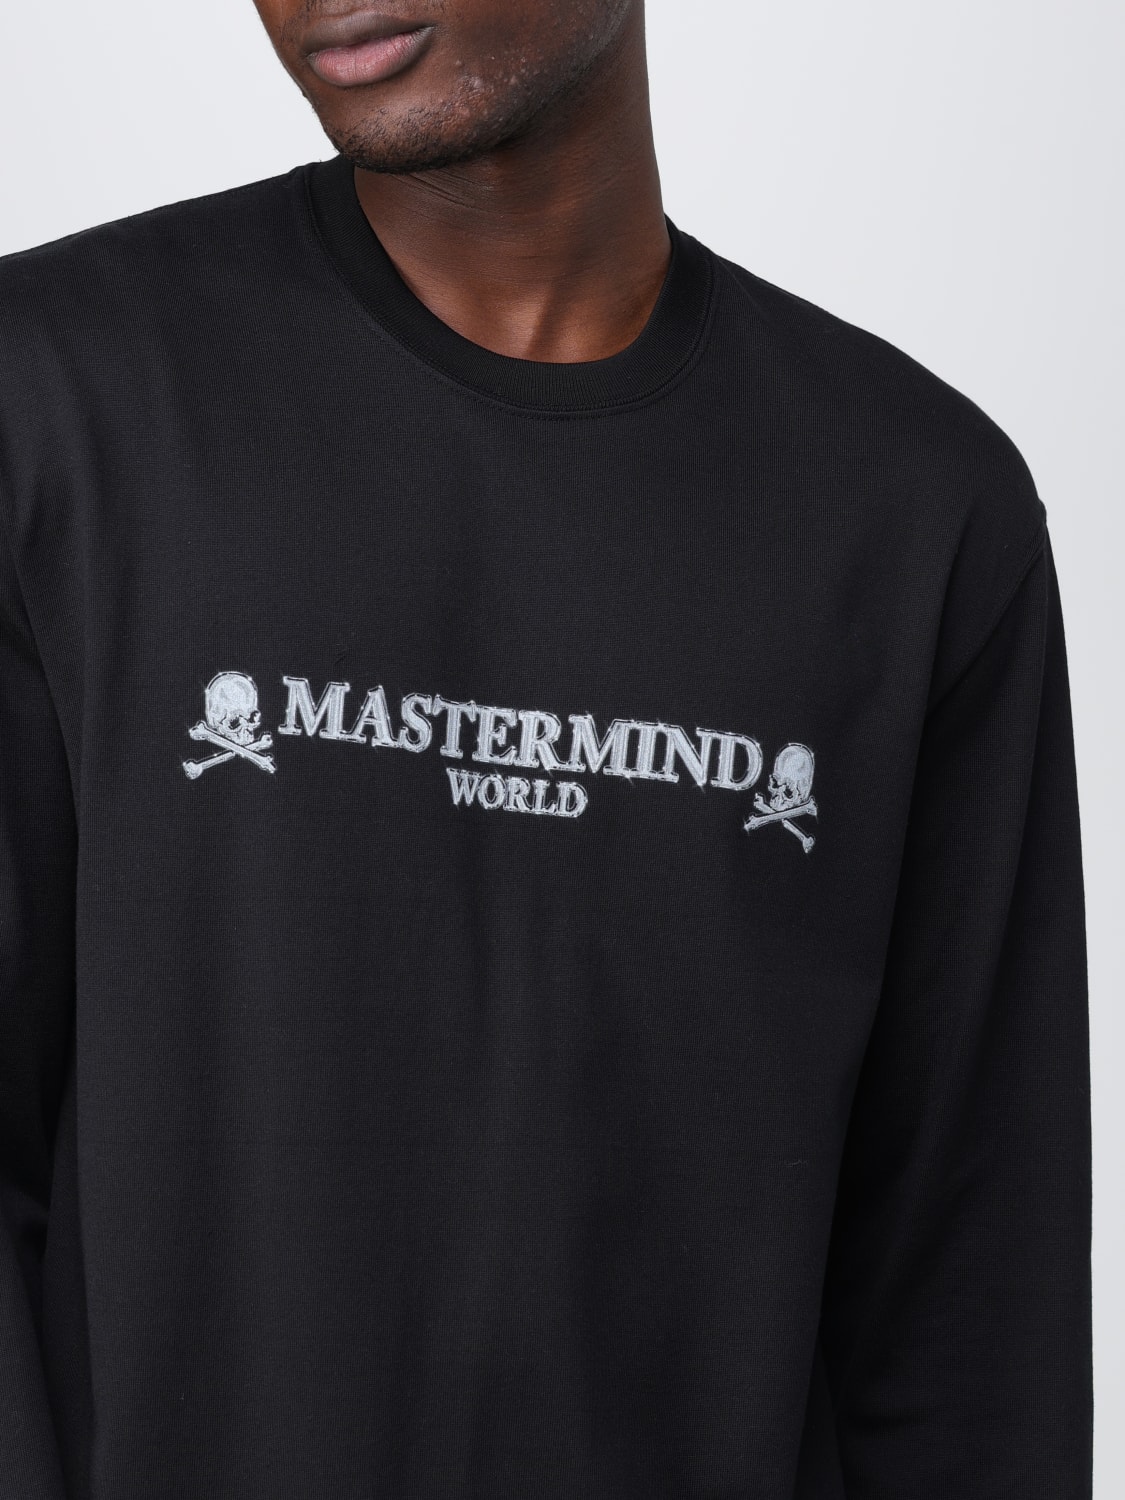 T-shirt men Mastermind World